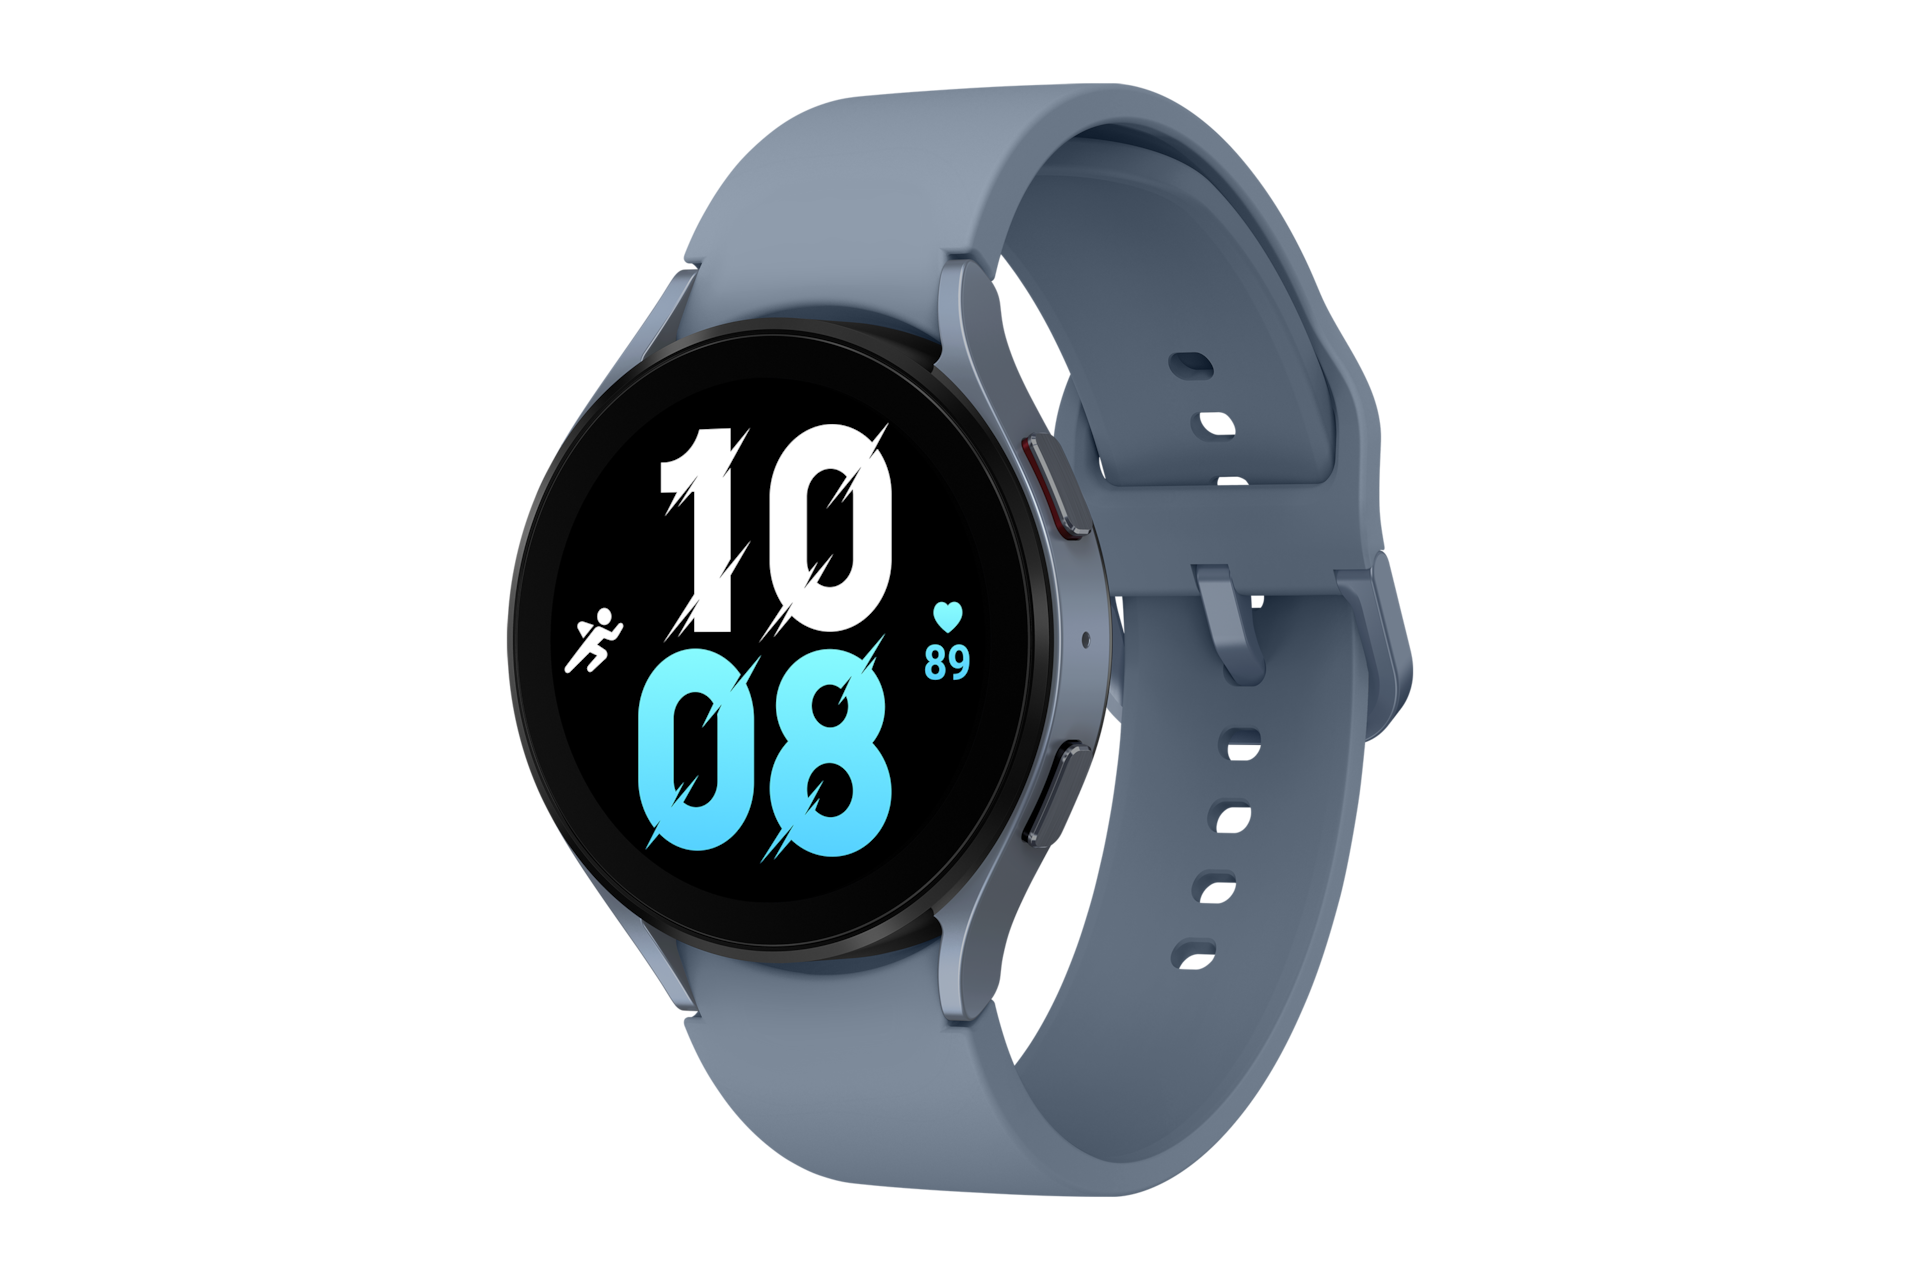 Khám phá mặt nghiêng phải với màn hình hiển thị độc đáo, dây đeo thời trang đang đóng lại của đồng hồ Watch5 Pro Bluetooth 44mm (SM-R910NZBAXXV) màu xanh!